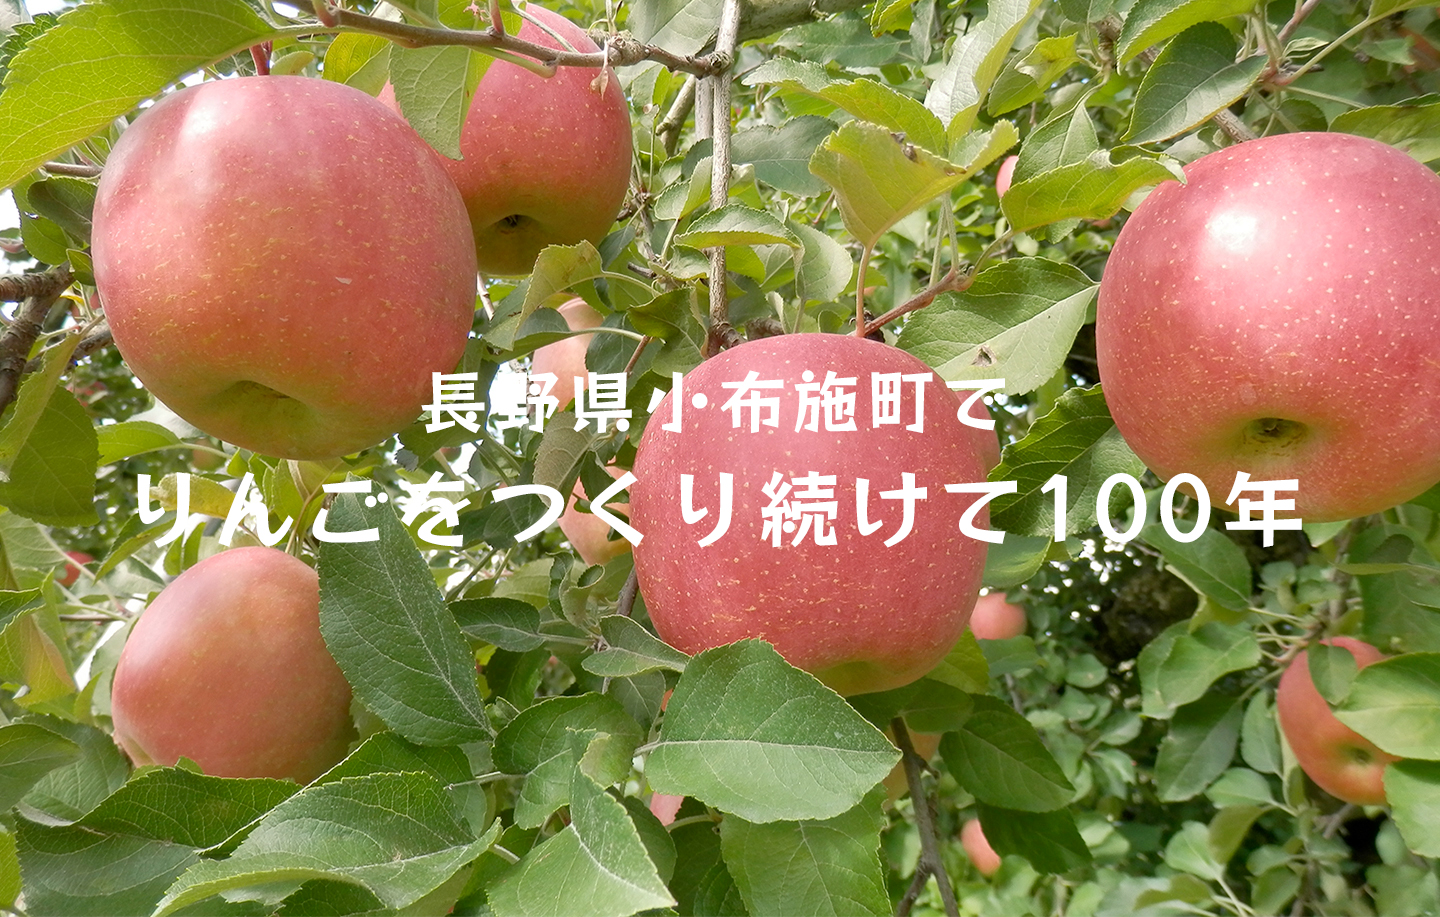 りんご紹介 - 信州園  長野県小布施町でりんごをつくり続けて100年